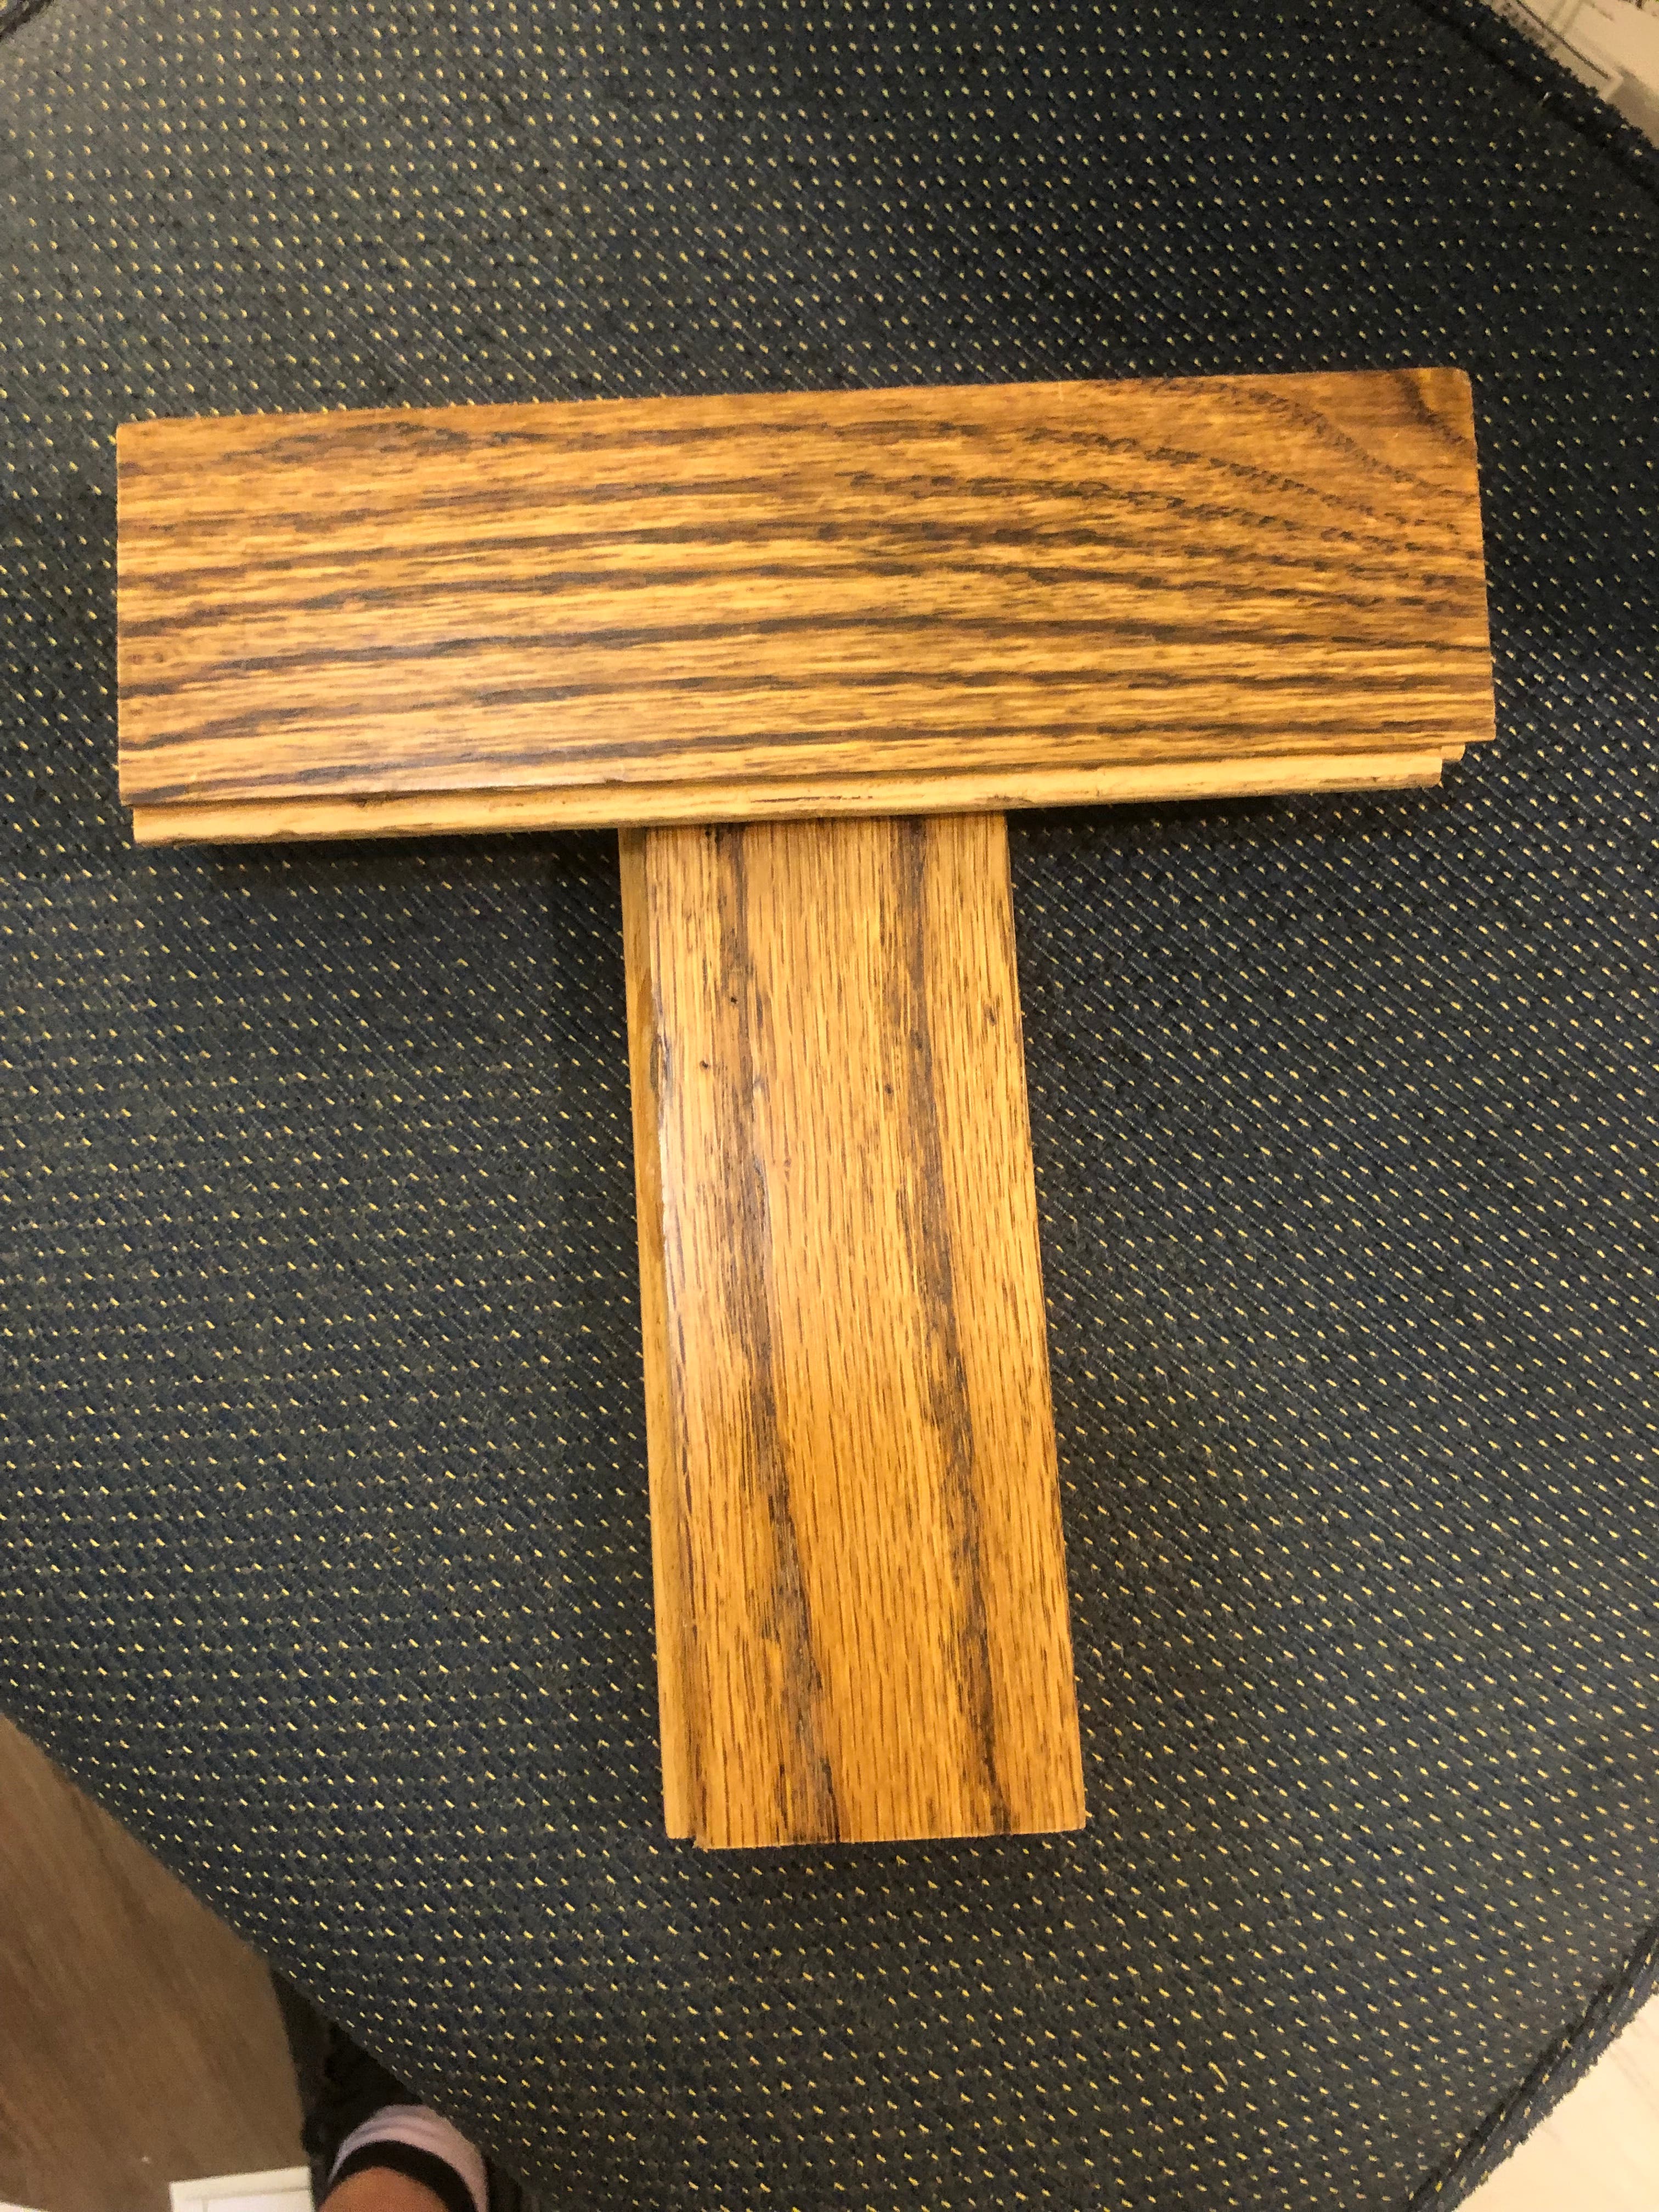 Used Bruce hardwood flooring material